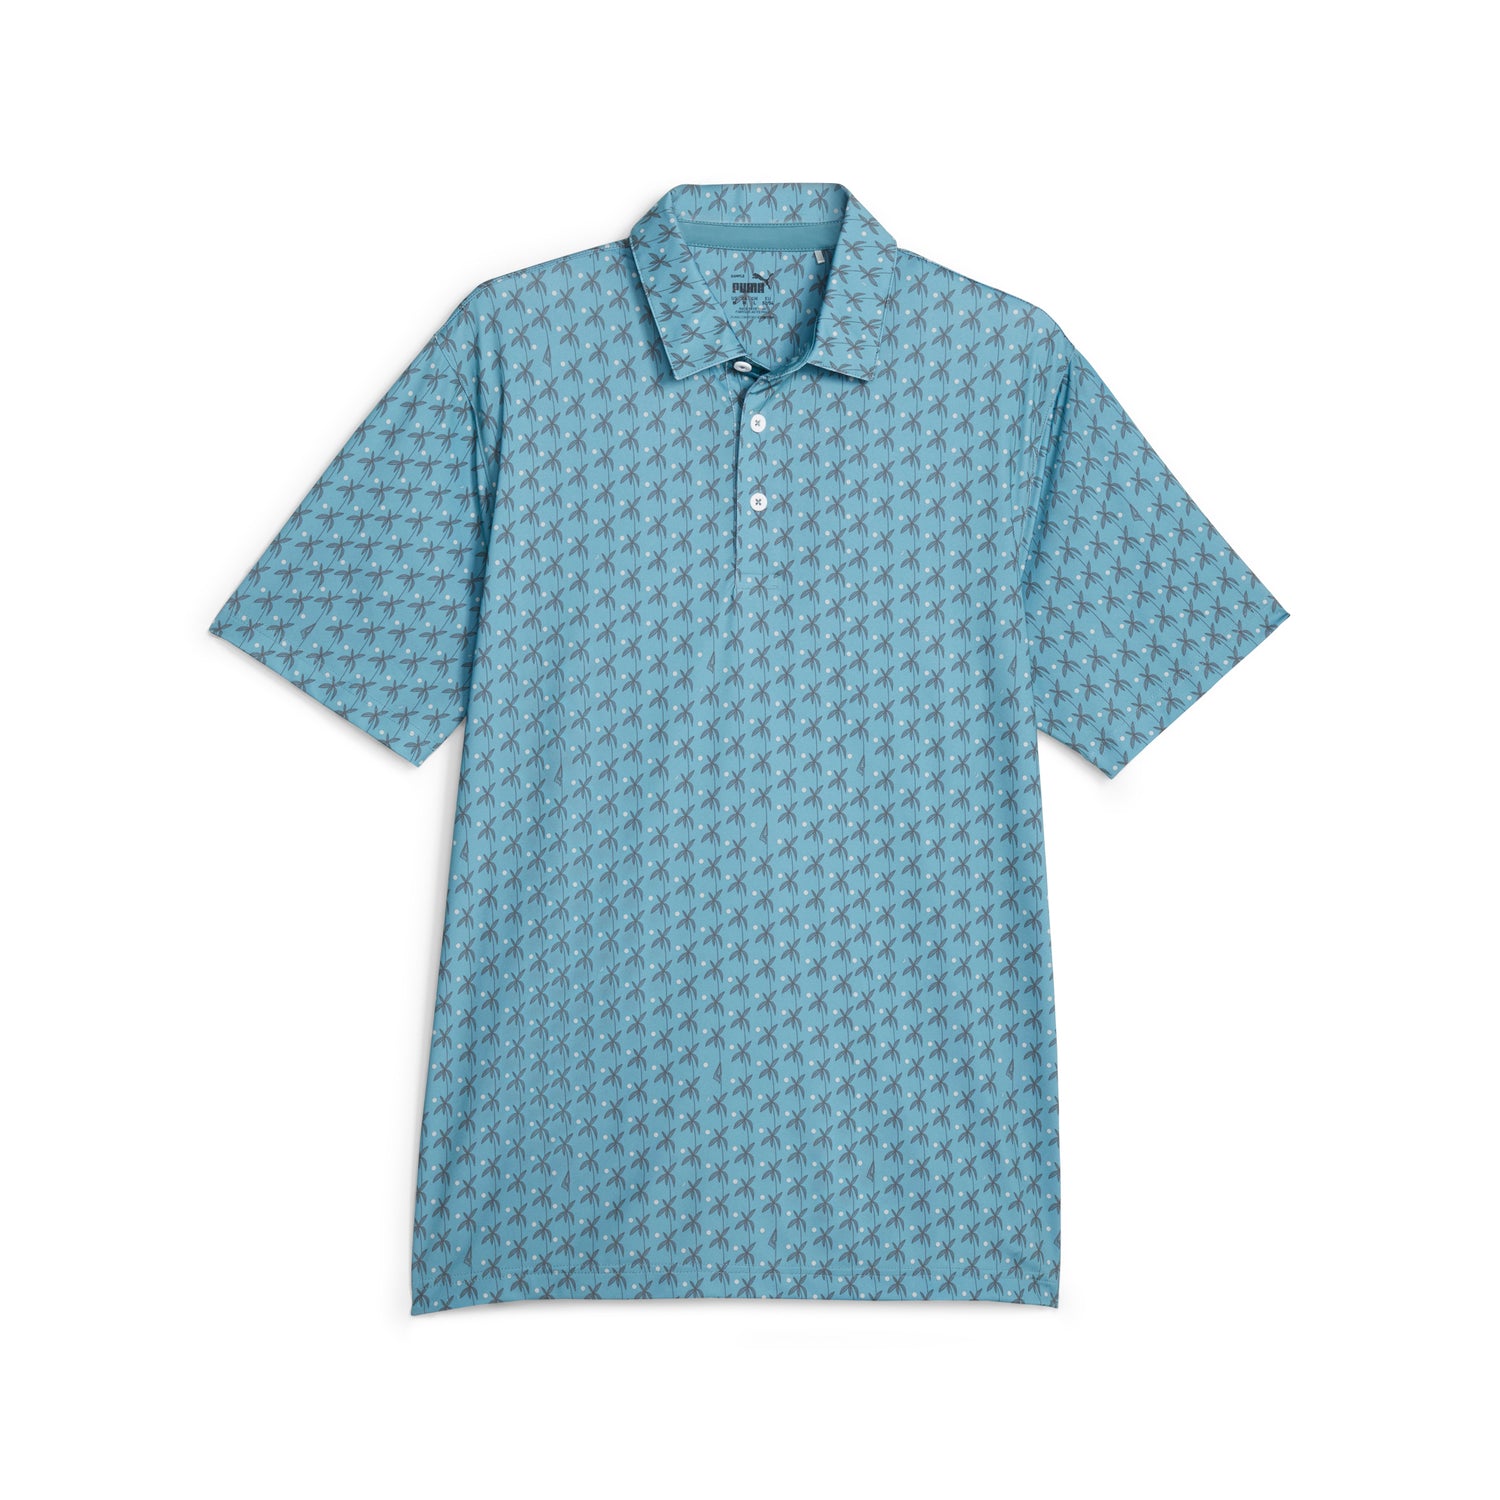 Louis Vuitton Monogram Tile T-Shirt Blue. Size Xs